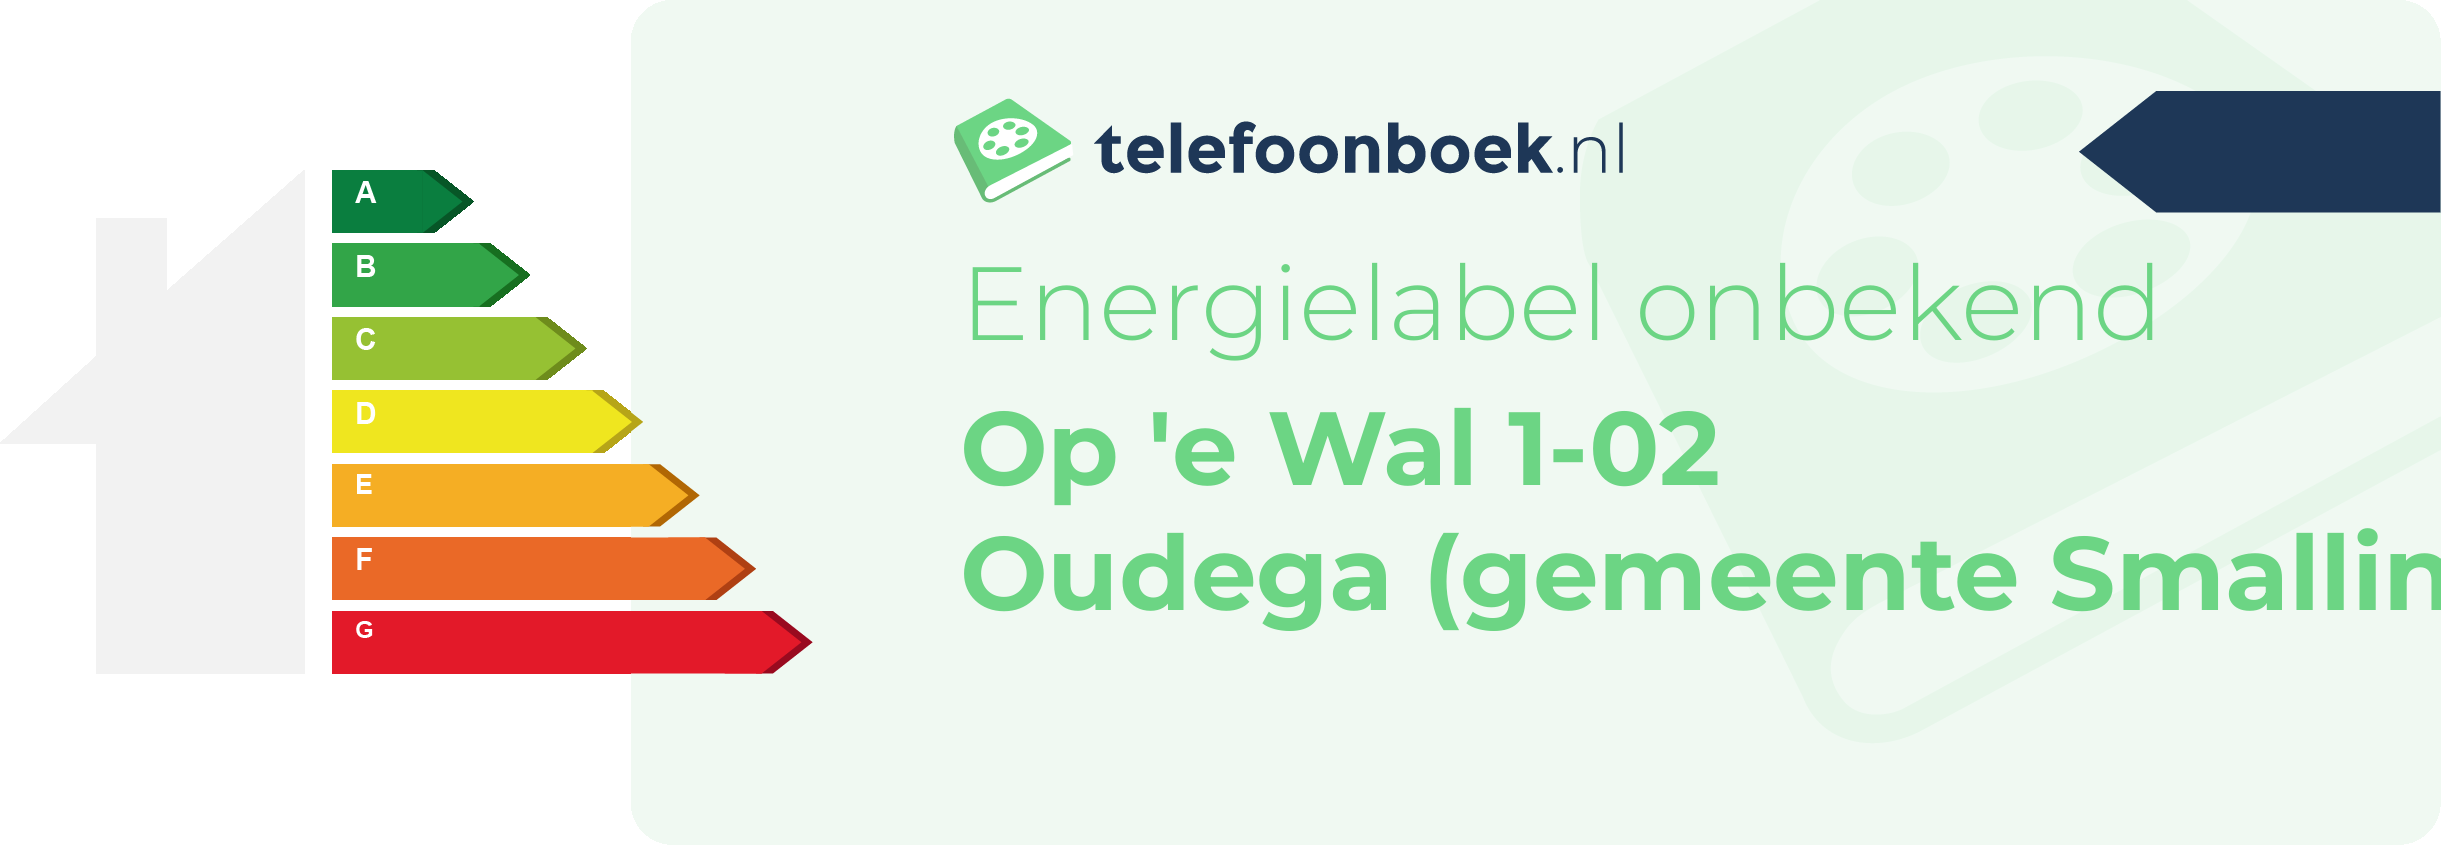 Energielabel Op 'e Wal 1-02 Oudega (gemeente Smallingerland Friesland)